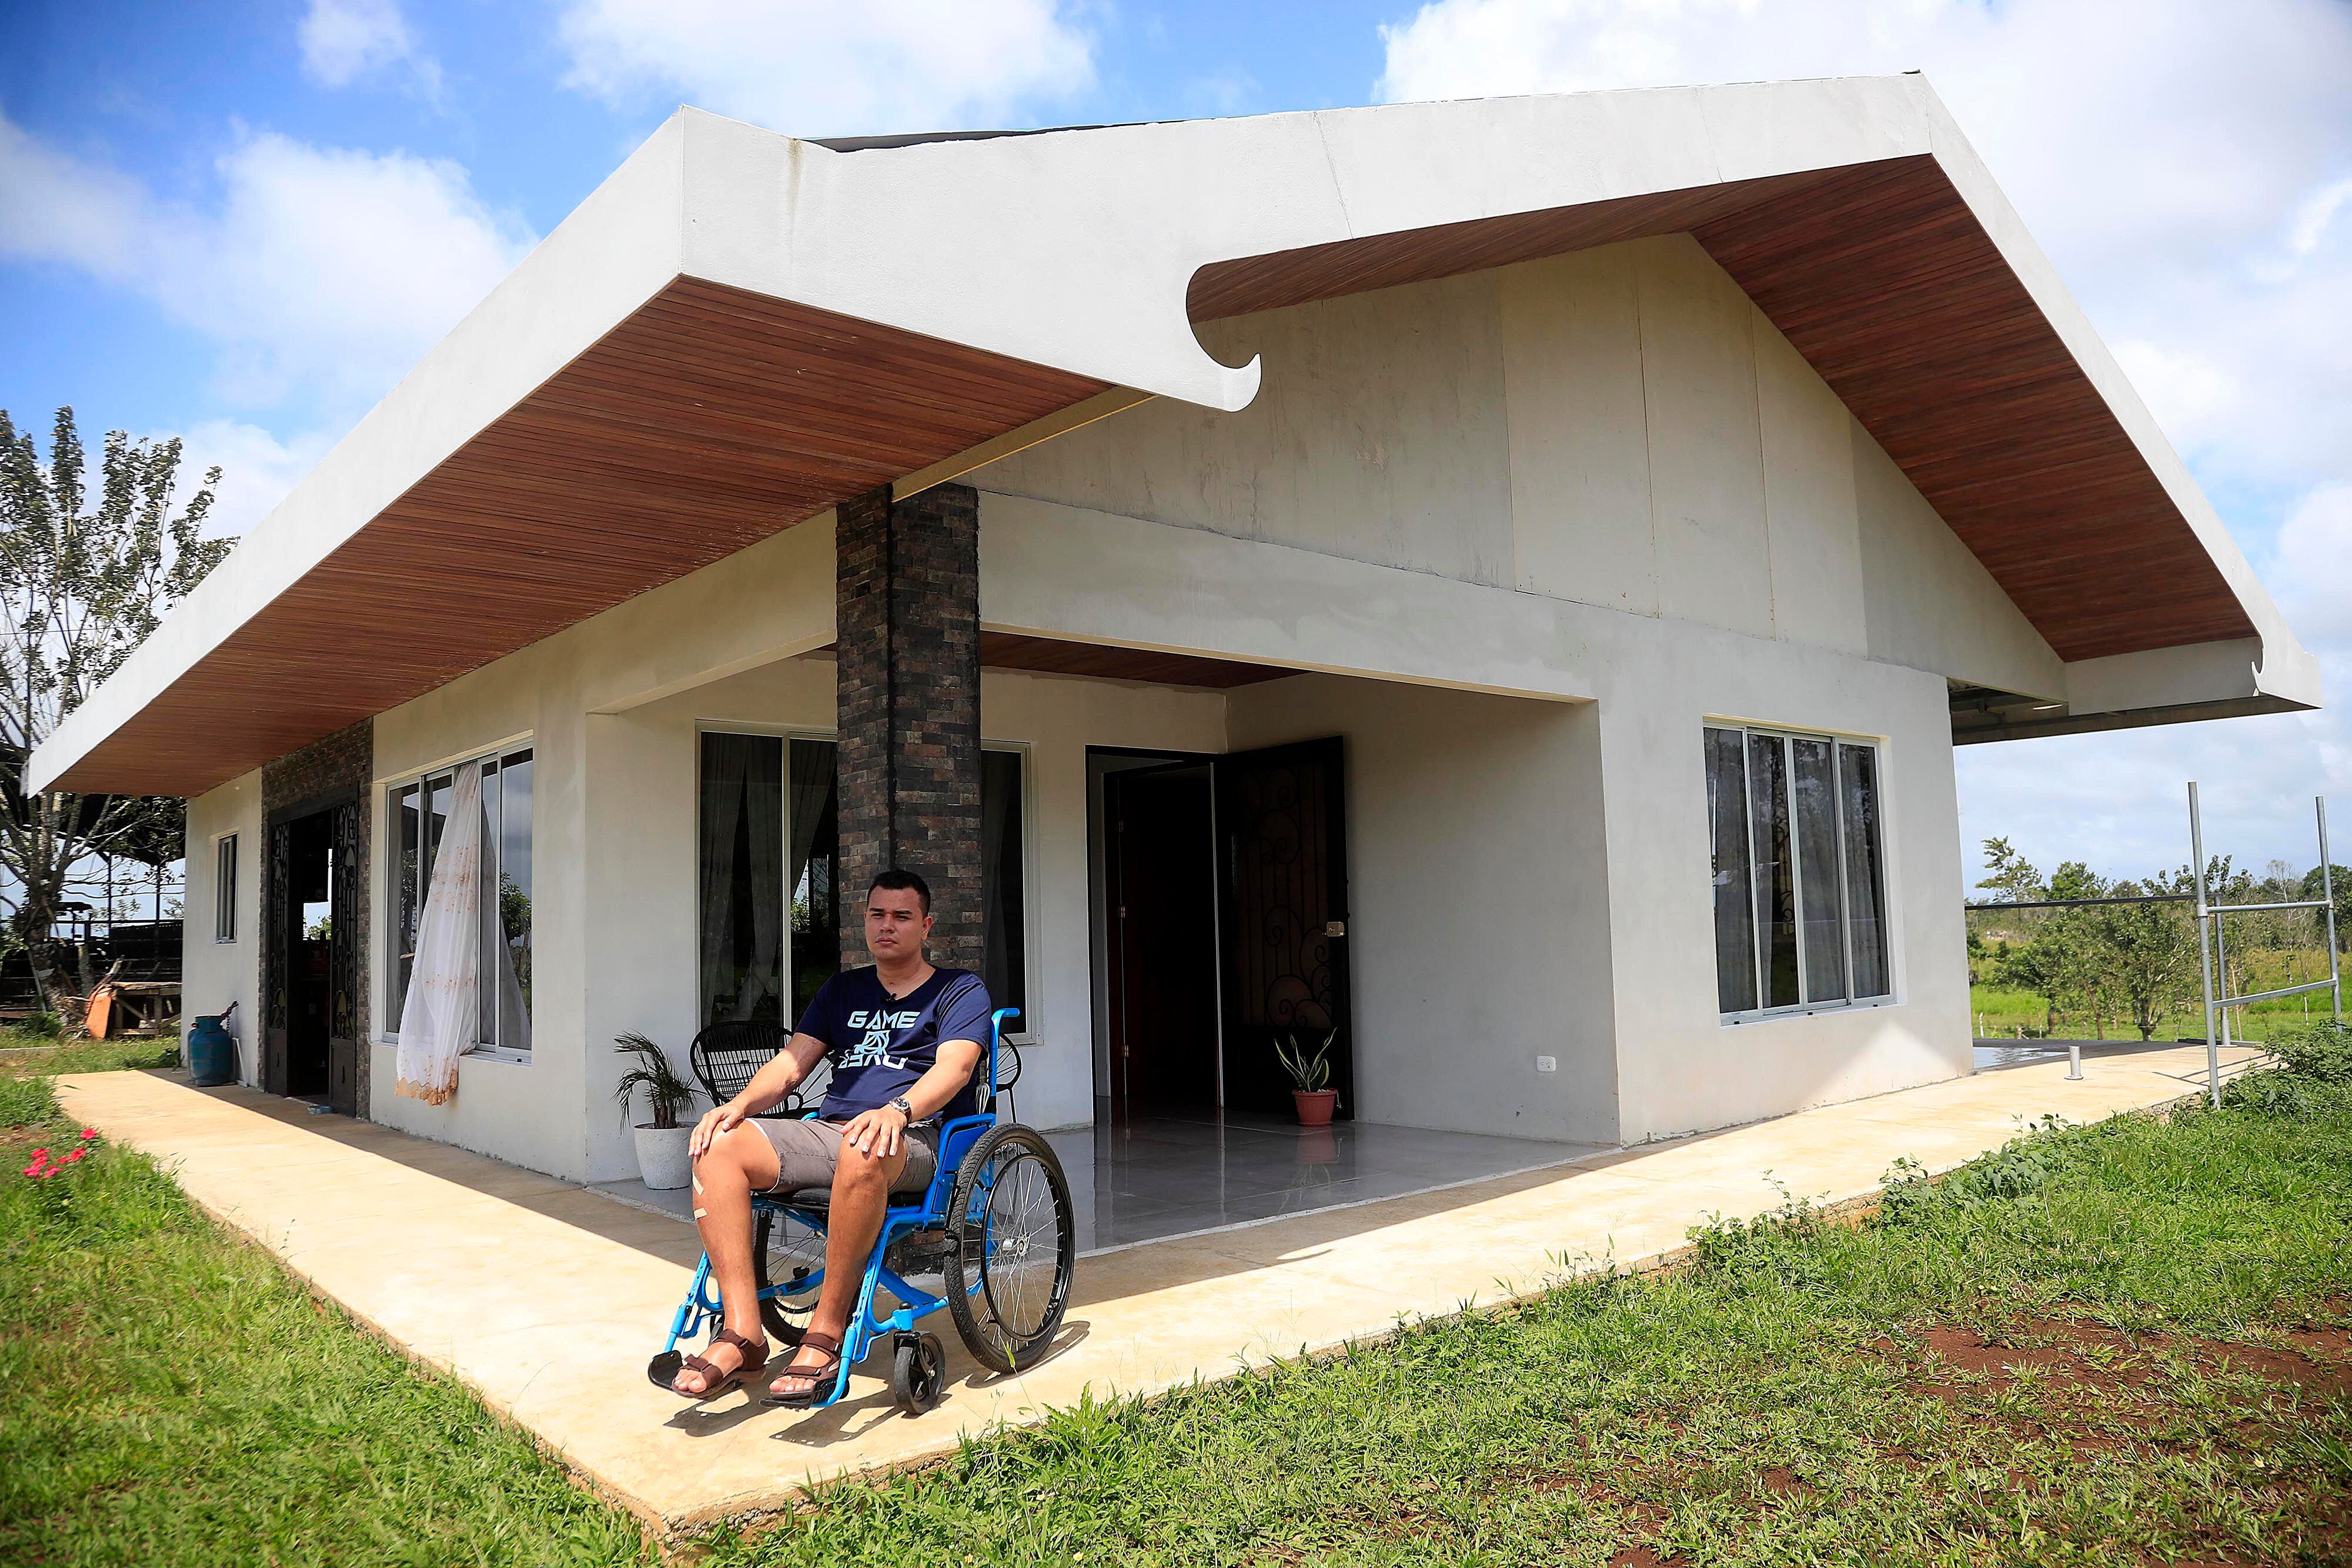 Eliander Lara tuvo un accidente en motocicleta a un kilómetro de su casa, cuando regresaba del trabajo cerca del mediodía del 9 de febrero del 2022. El muchacho, de 28 años y su familia, ahora viven en una nueva casa recién construida con las comodidades requeridas para su desplazamiento en silla de ruedas.